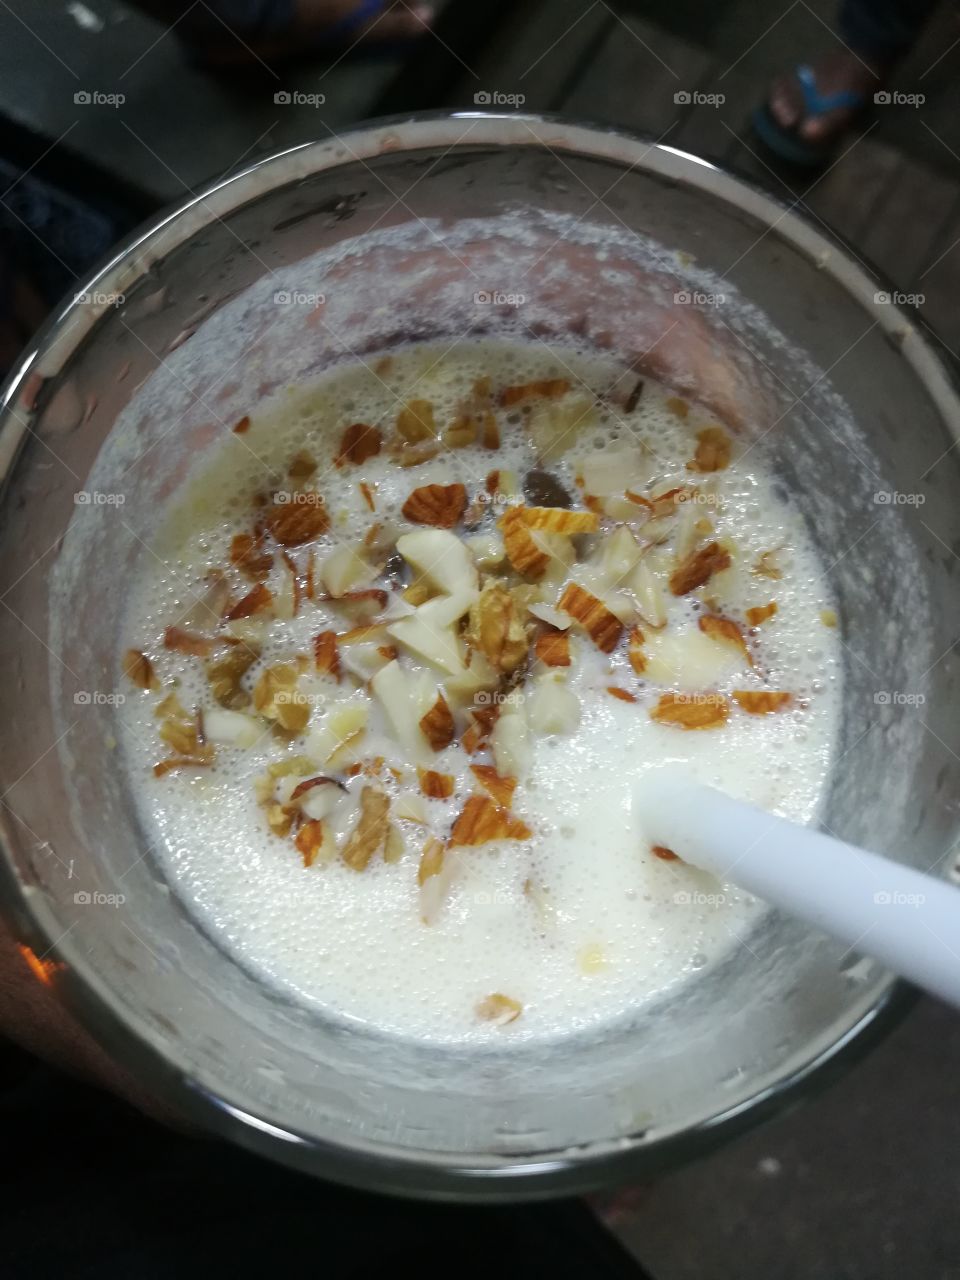 Almond milkshake